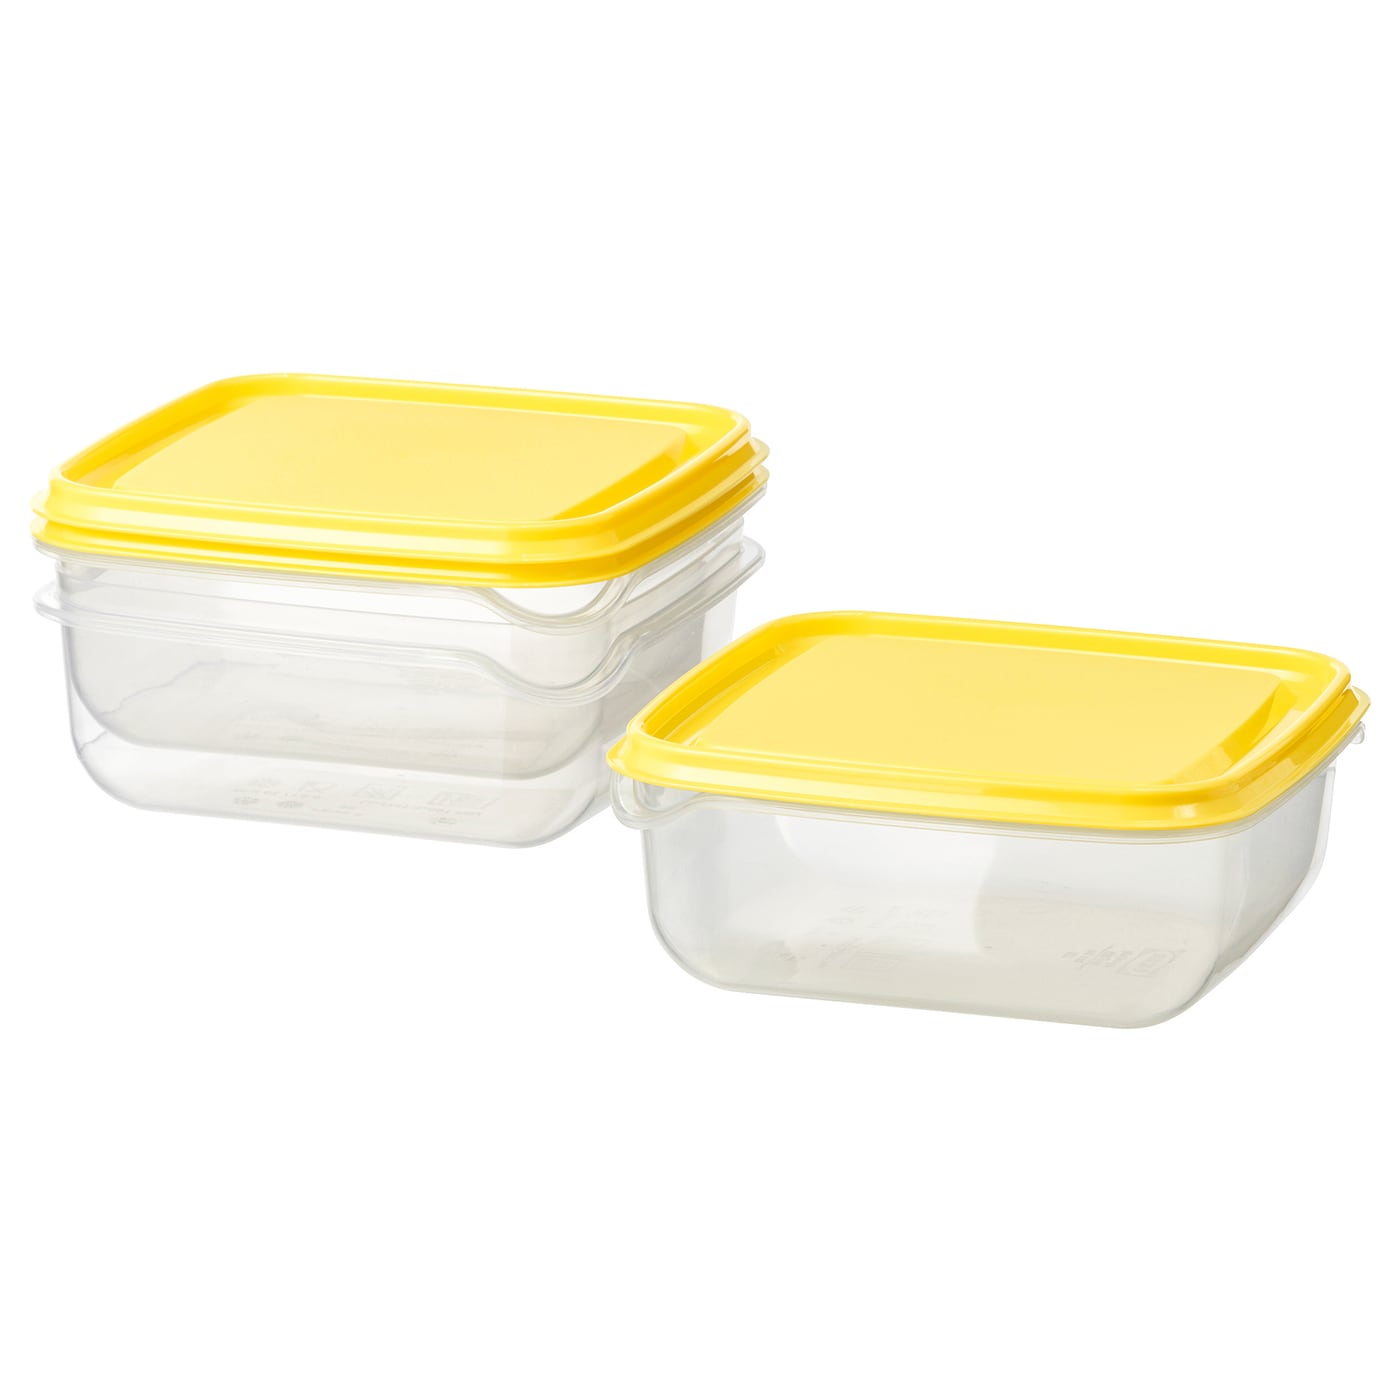 Набор контейнеров для продуктов с крышкой, 3 шт. - IKEA PRUTA, 14х14х6 см, желтый/прозрачный, ПРУТА ИКЕА